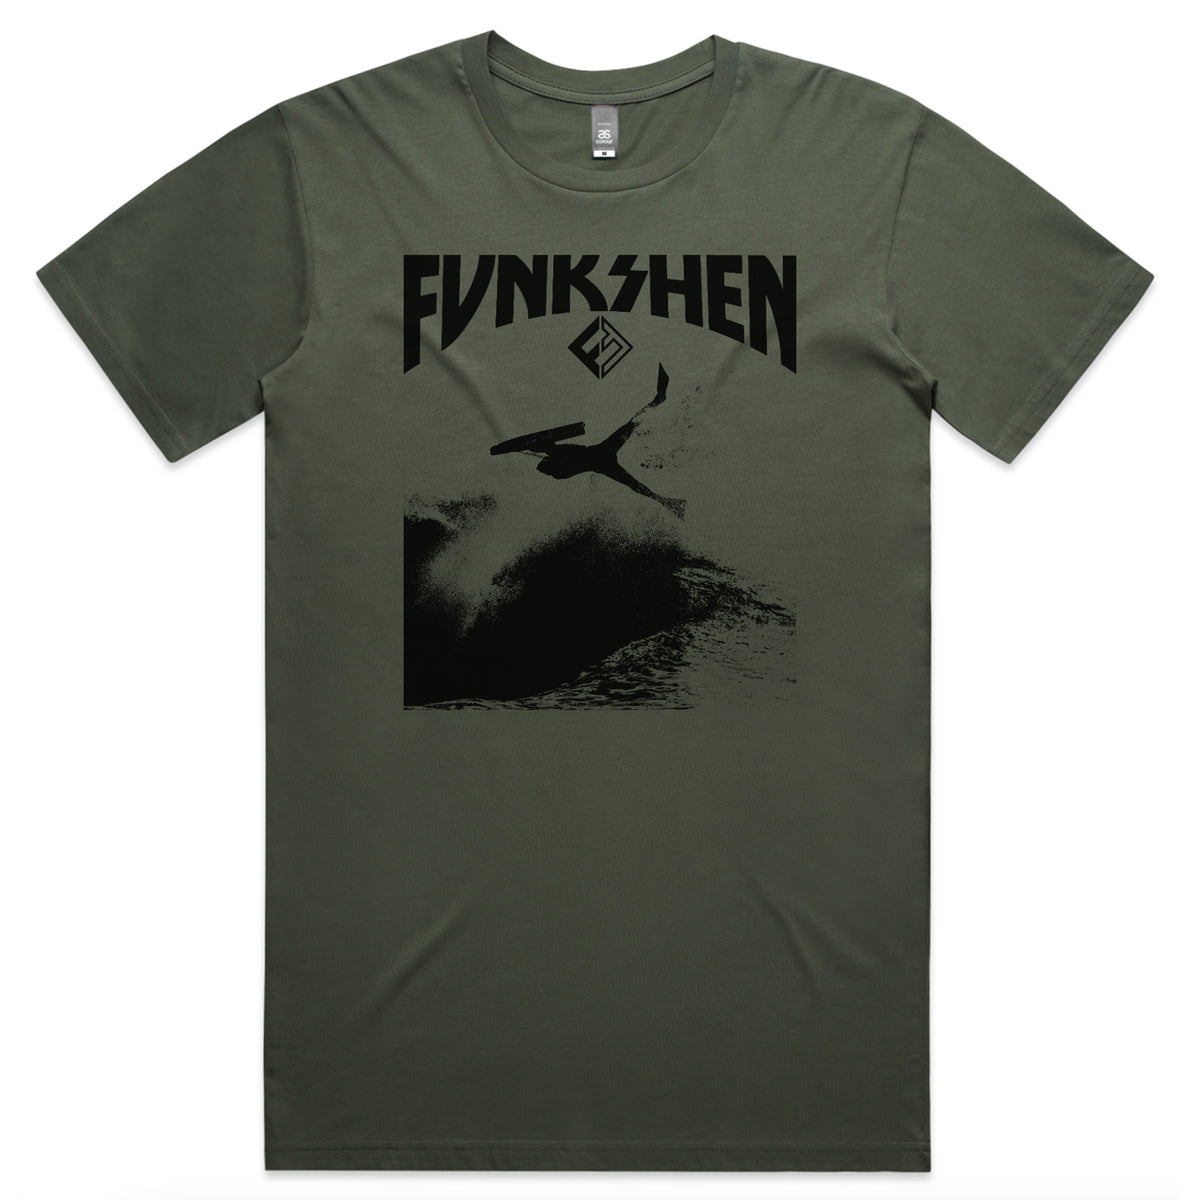 Funkshen INVERT T-Shirt - Cypress